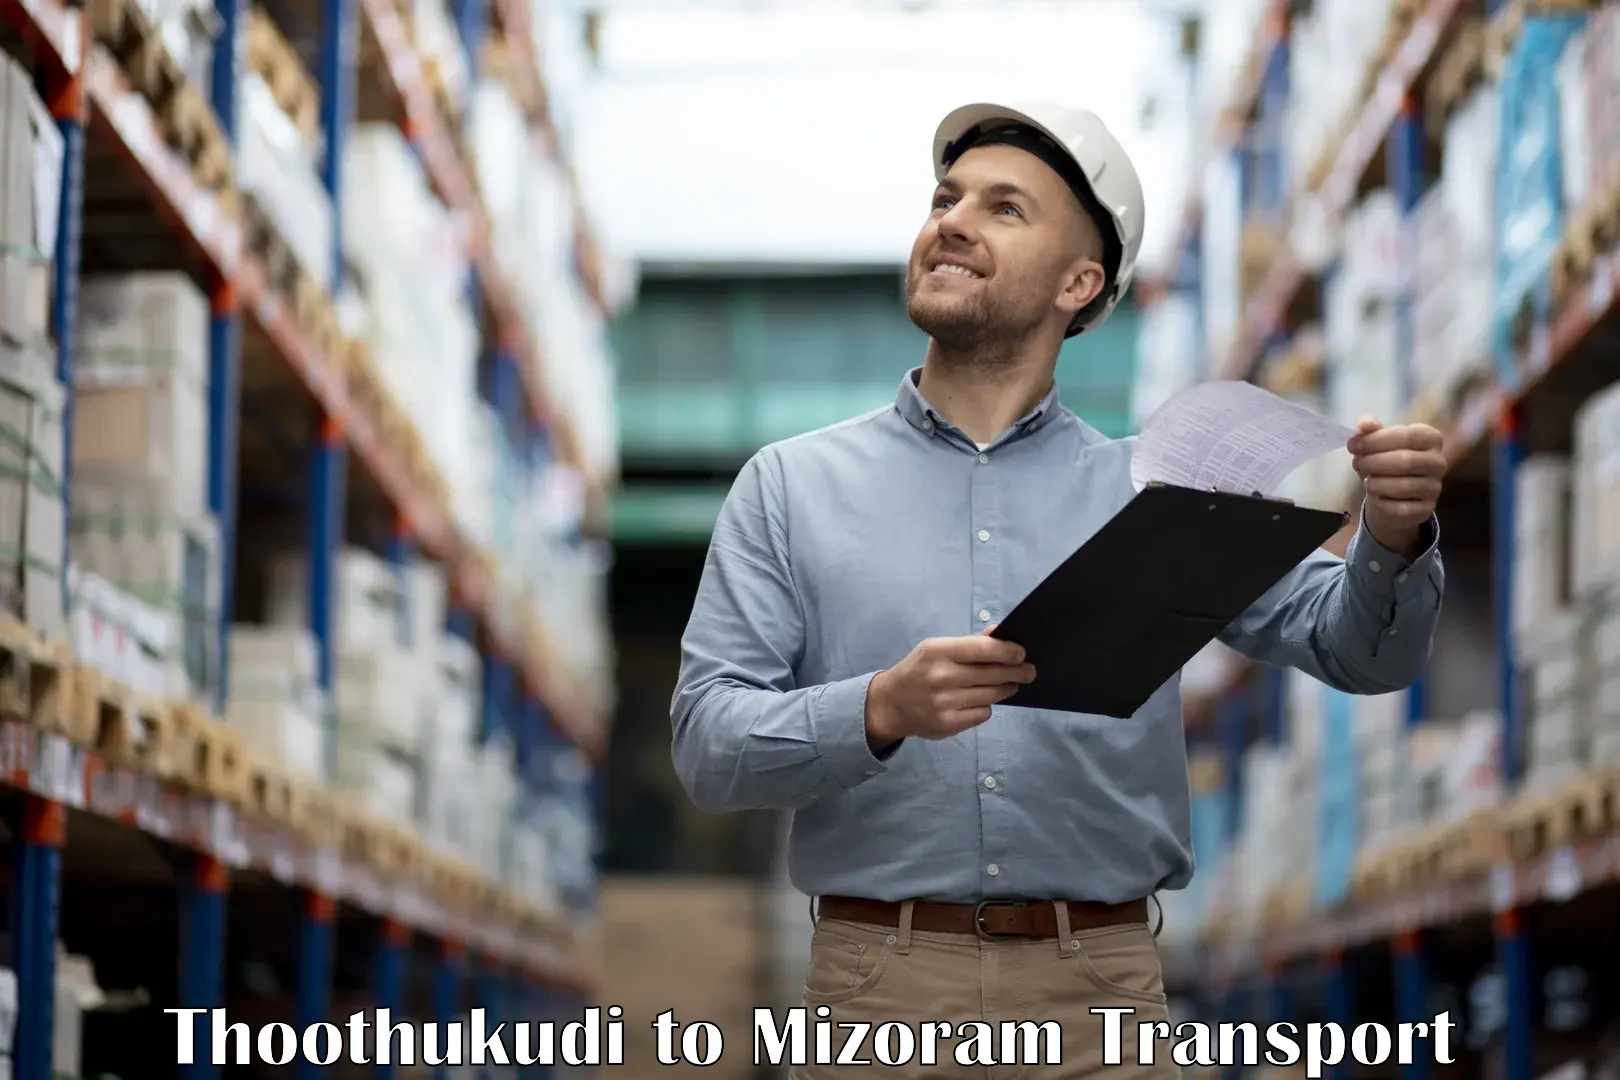 Furniture transport service Thoothukudi to Aizawl